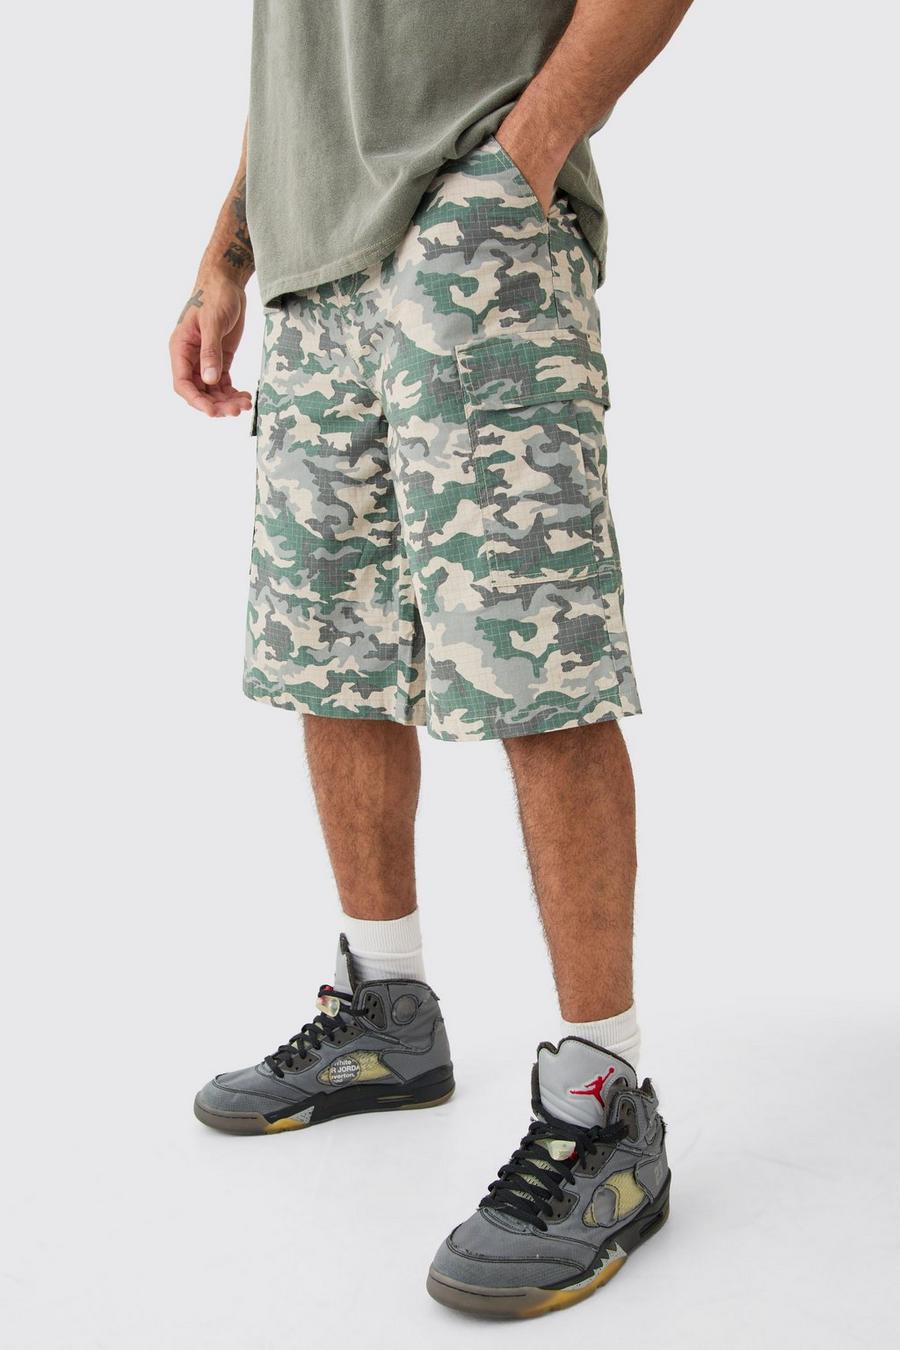 Pantaloni tuta in nylon ripstop in fantasia militare con etichetta intessuta, Khaki image number 1